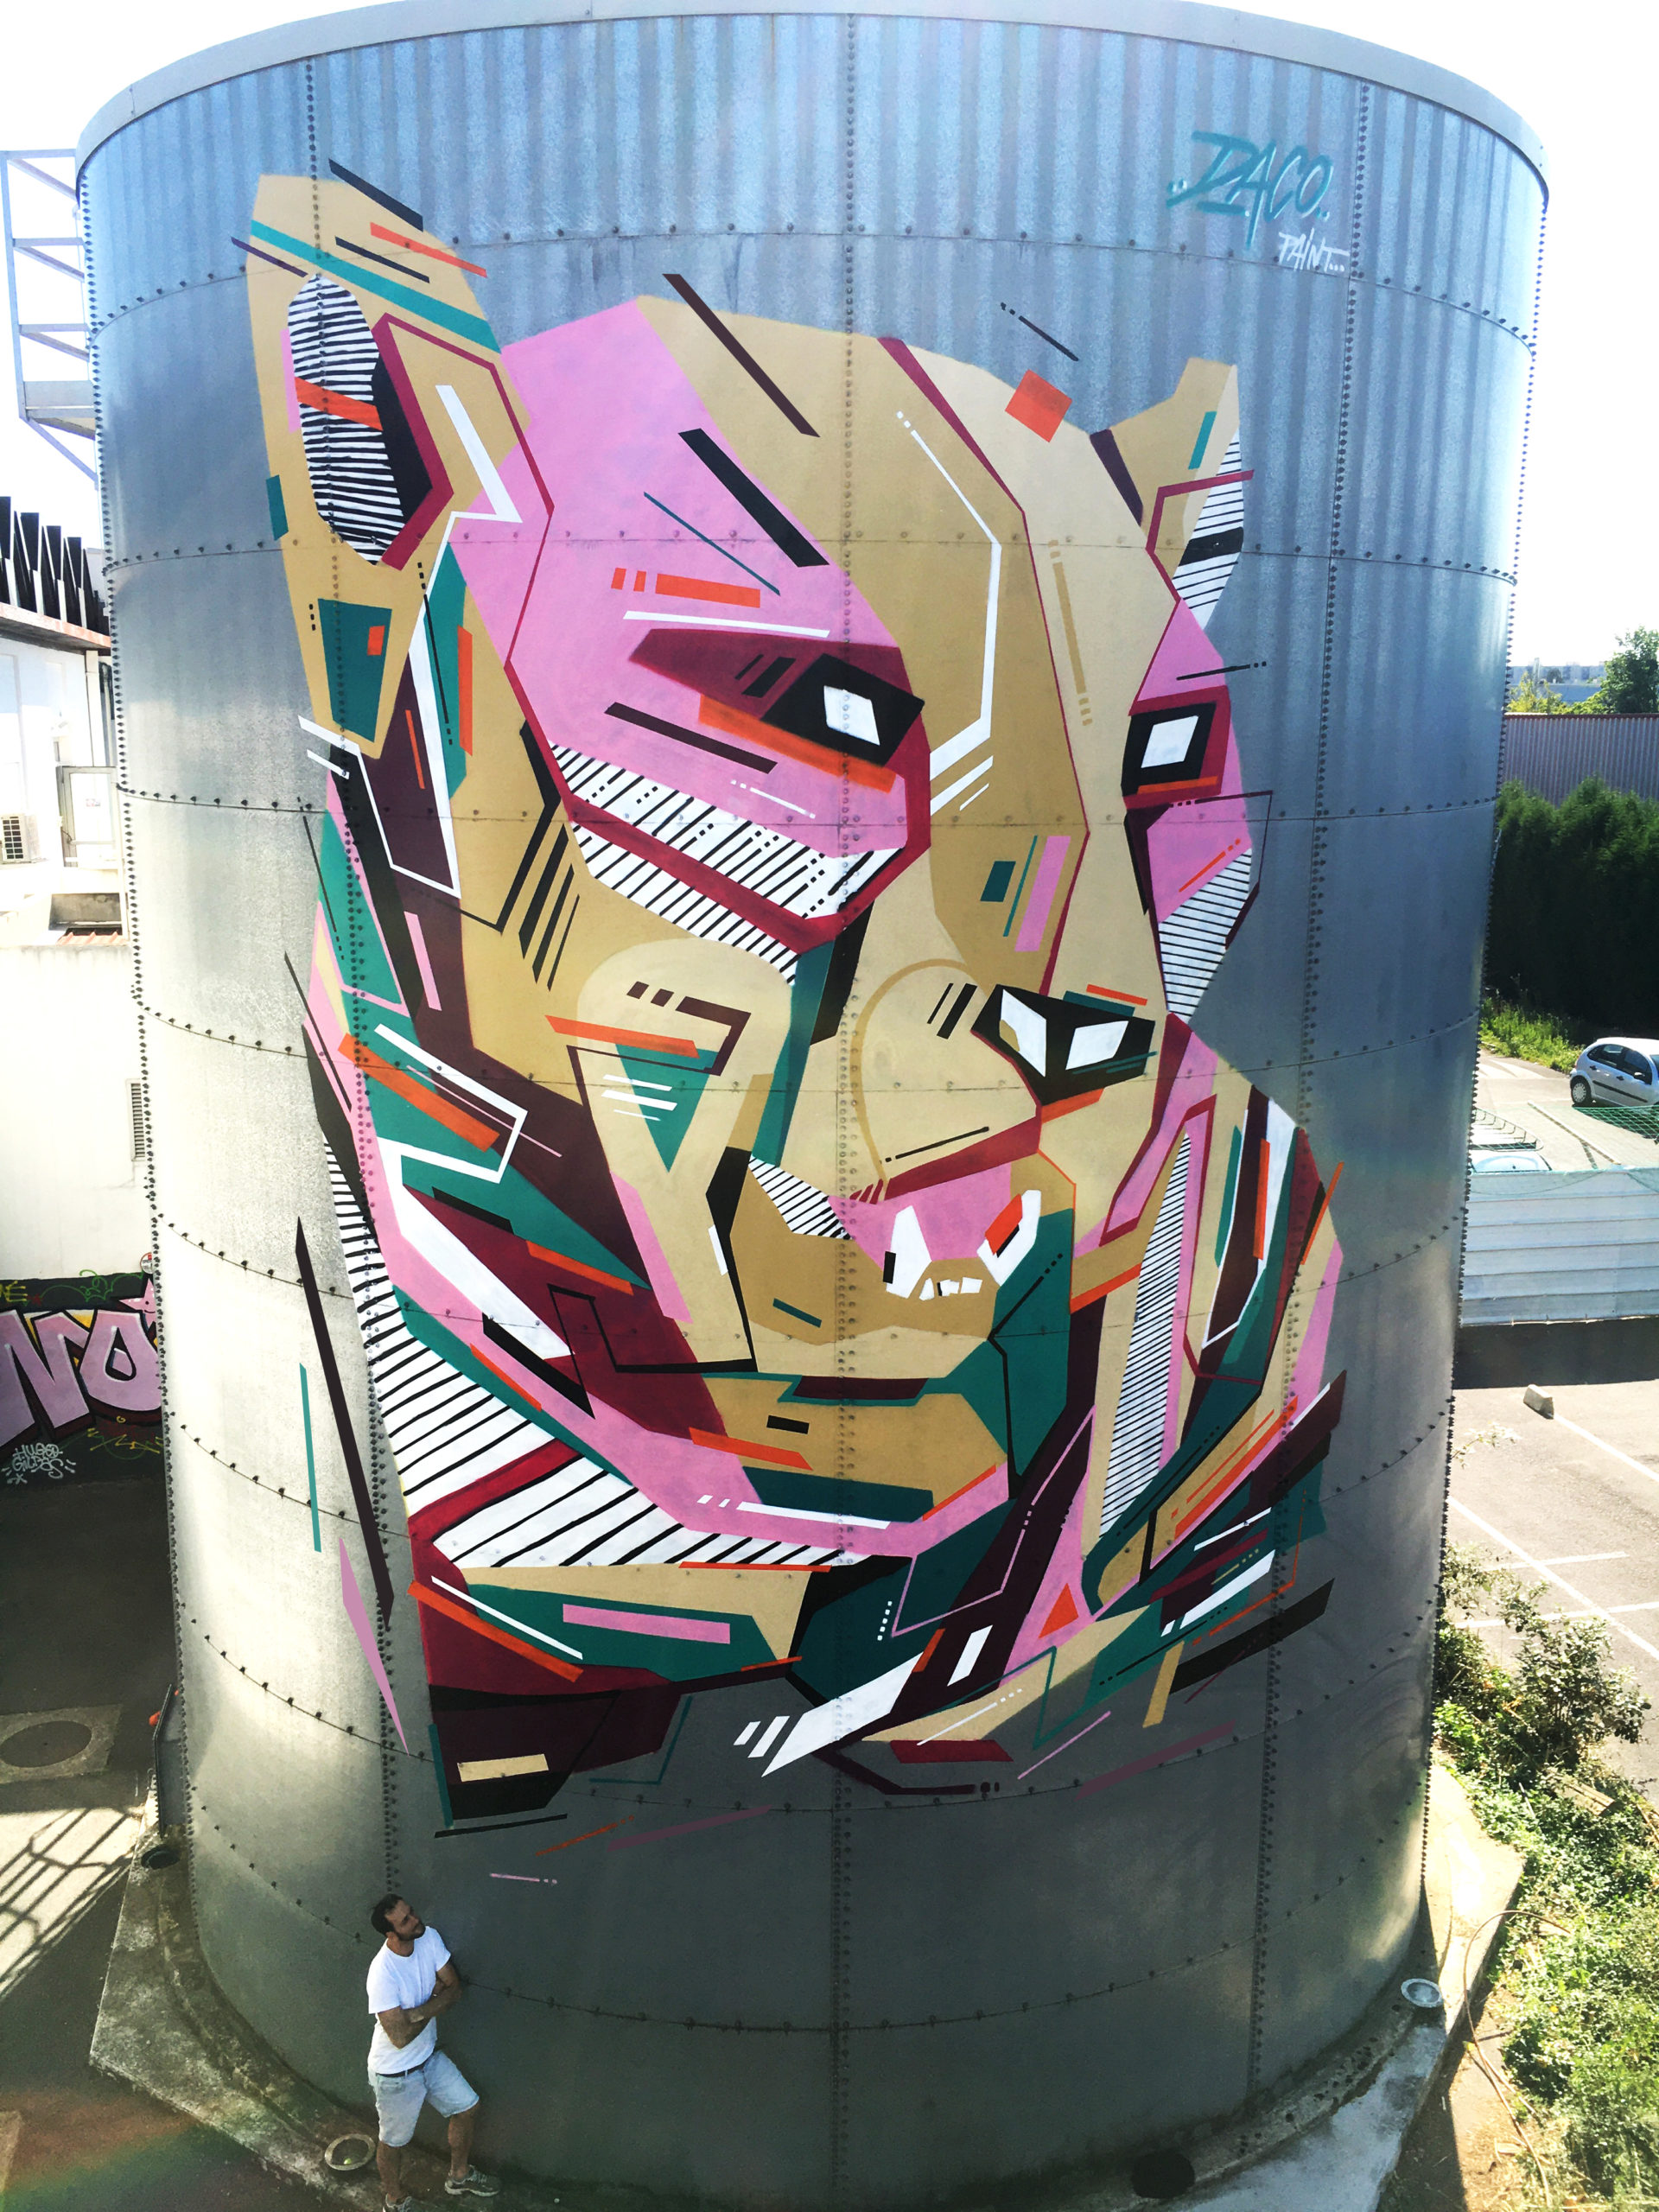 Fresque Graffaune Graffiti Léopard réalisée par Daco sur une cuve